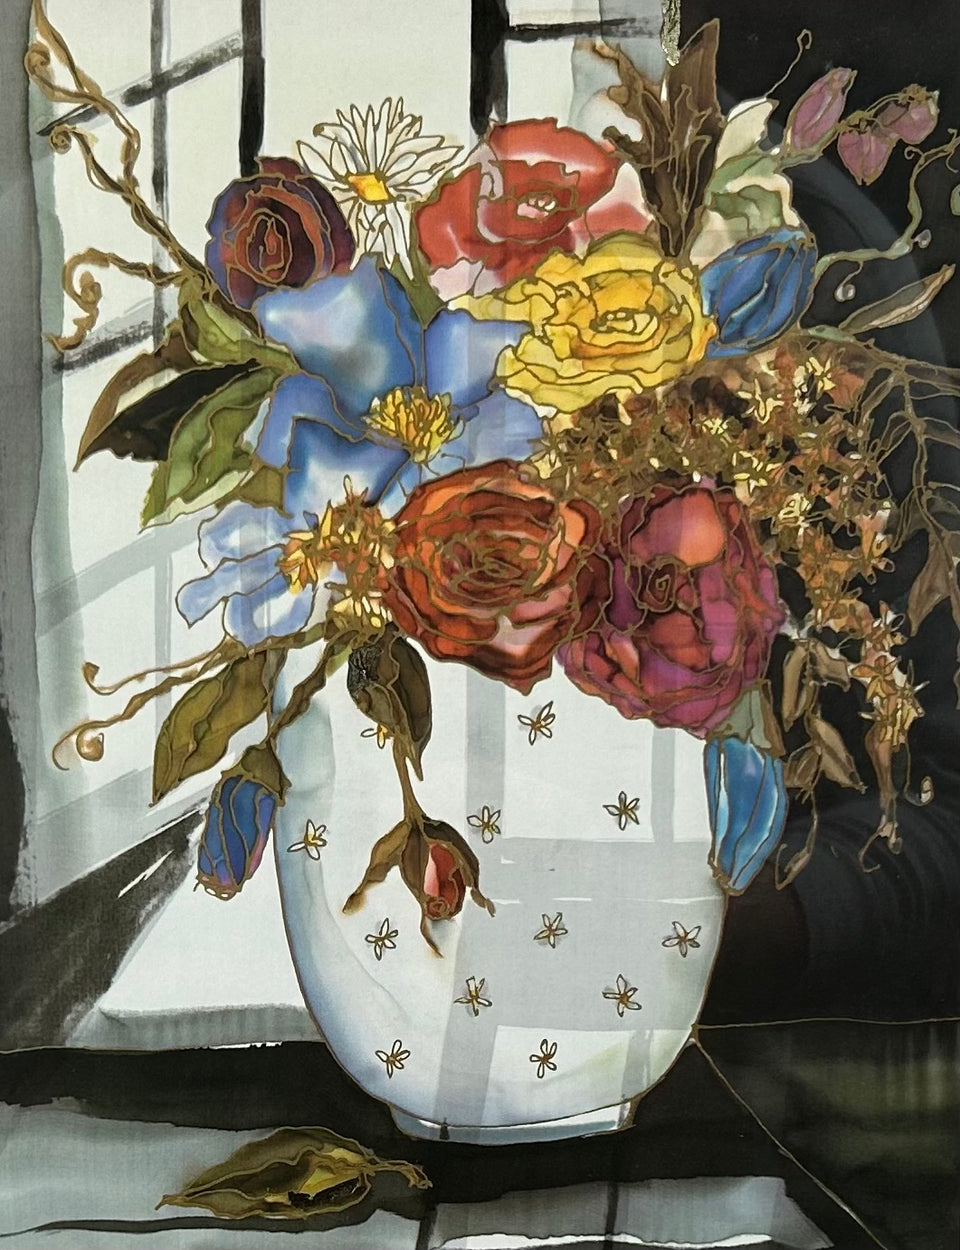 Fleurs pour lulu -Jutta Ritter-Scherer - Print with gold top layer